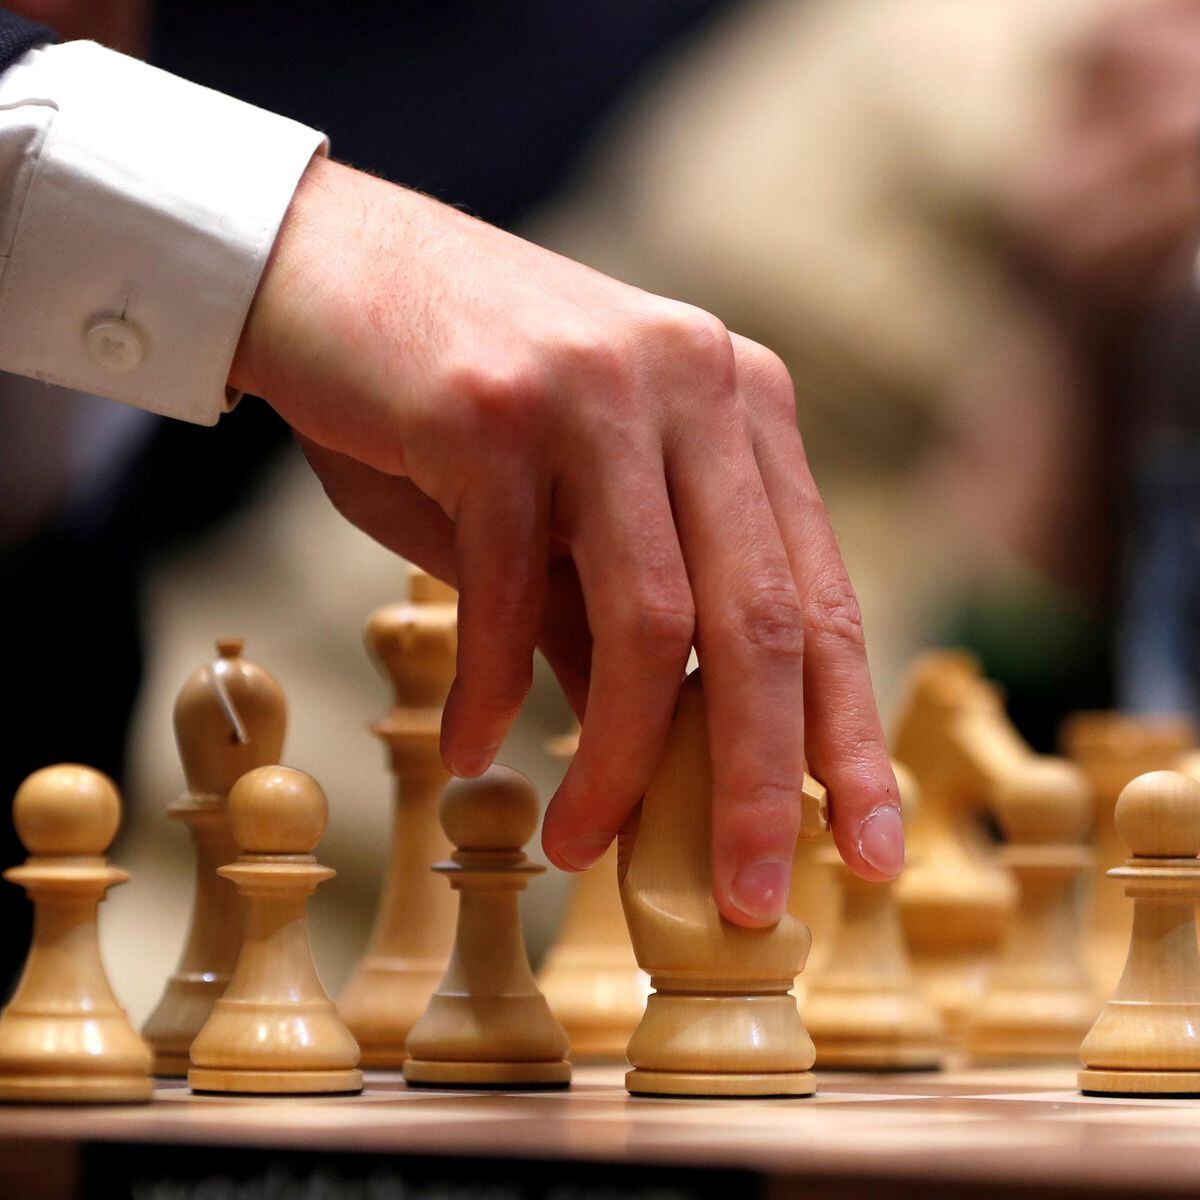 Erros de argumentação e jogos de xadrez: o que tem uma coisa com a